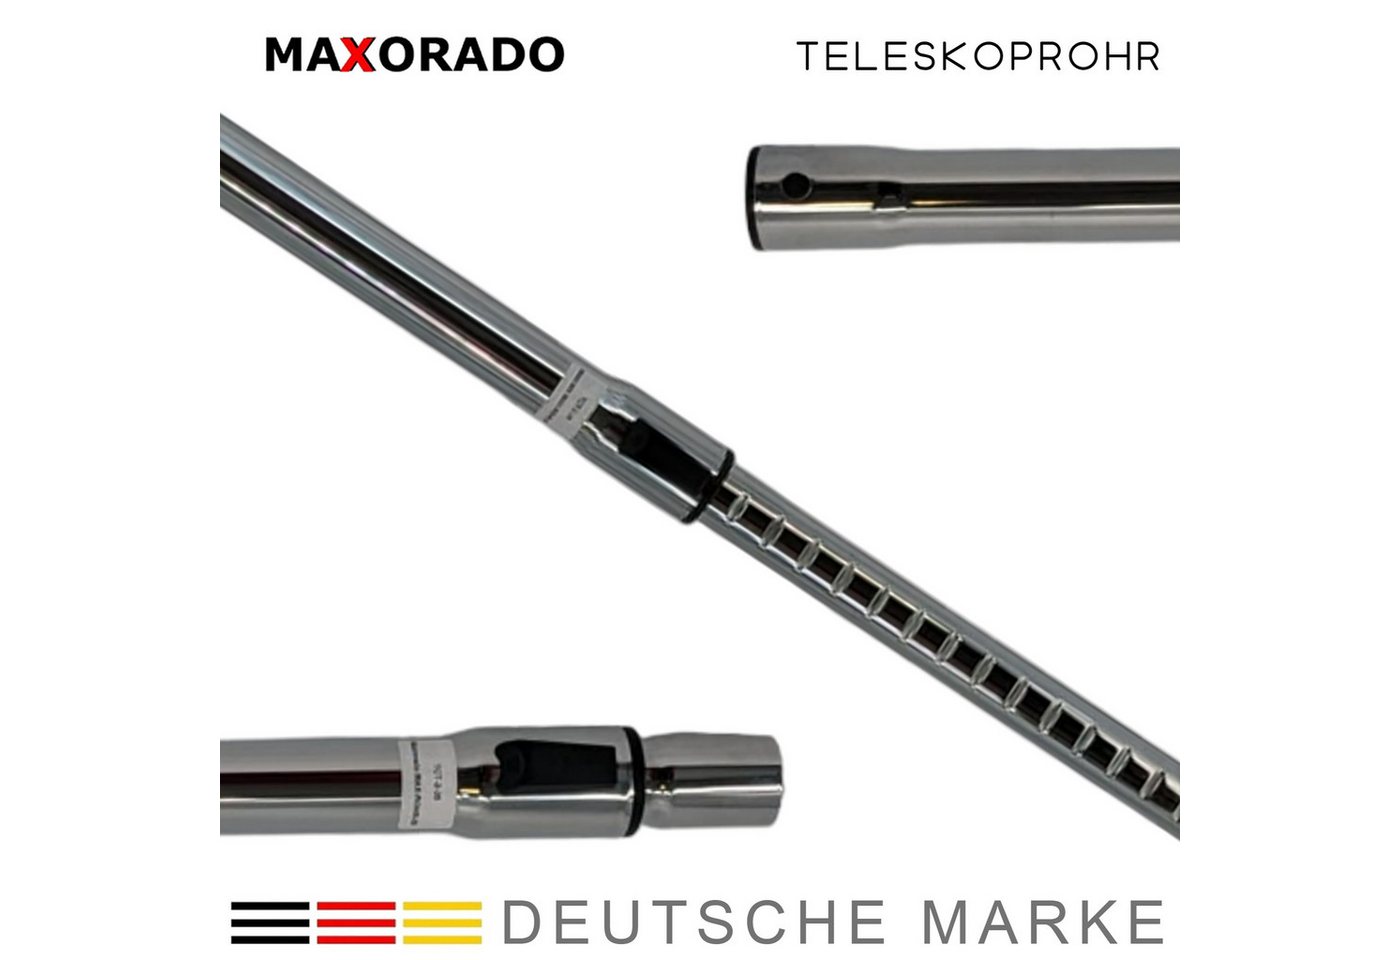 Maxorado Teleskoprohr Staubsauger Rohr VSQ8530 Q 8.0 extremePower Plus Allergy VSQ 8SEN72C, Zubehör für Nass- und Trockensauger, Industriestaubsauger, Staubsauger, für Bosch Siemens Kärcher Parkside NW35 35mm von Maxorado